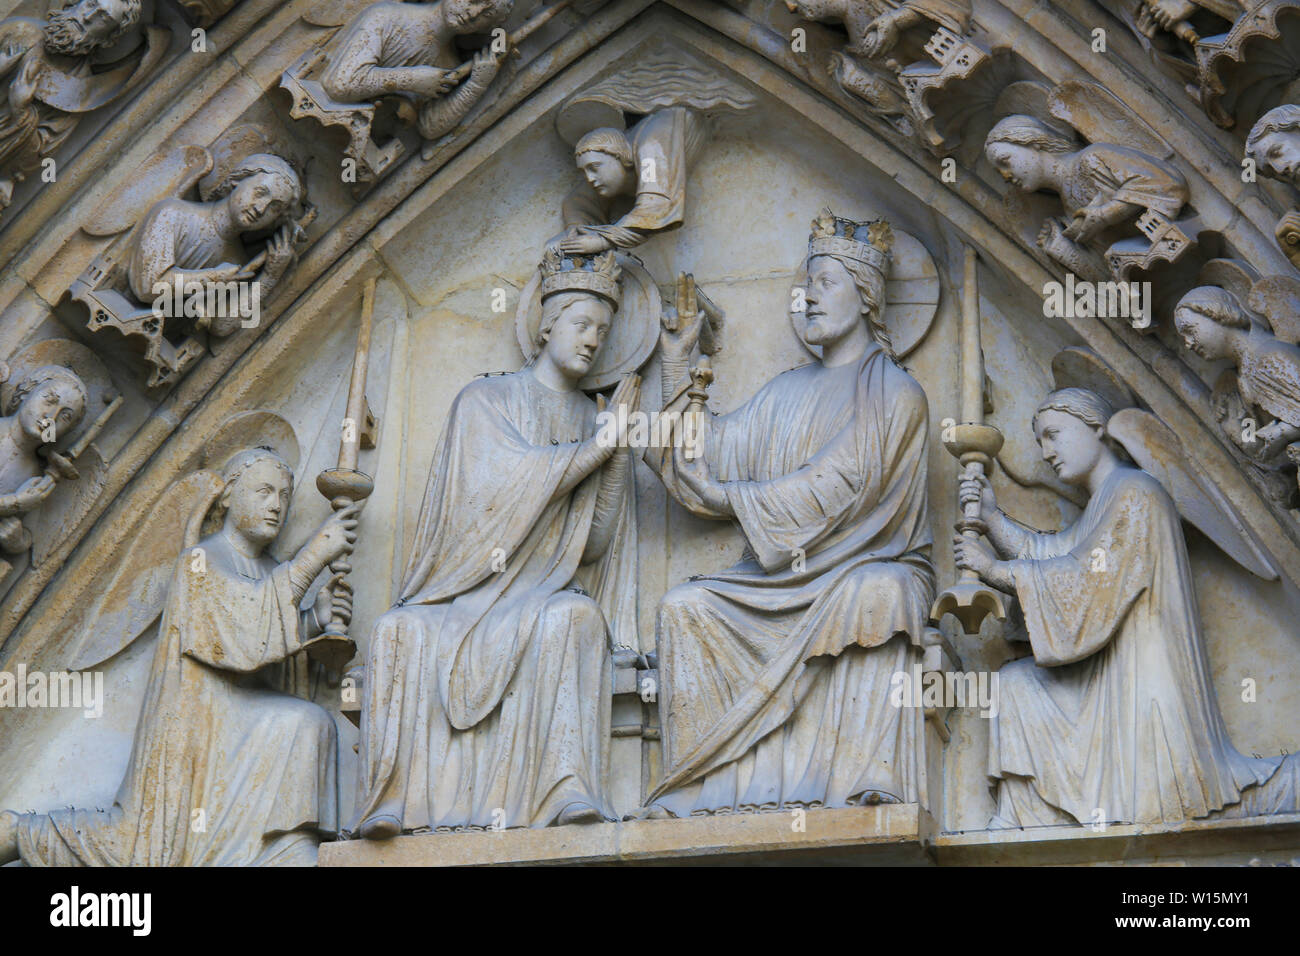 Esculturas medievales de la Coronación de la Virgen María por Cristo en la Catedral de Notre Dame, París, Francia. Foto de stock